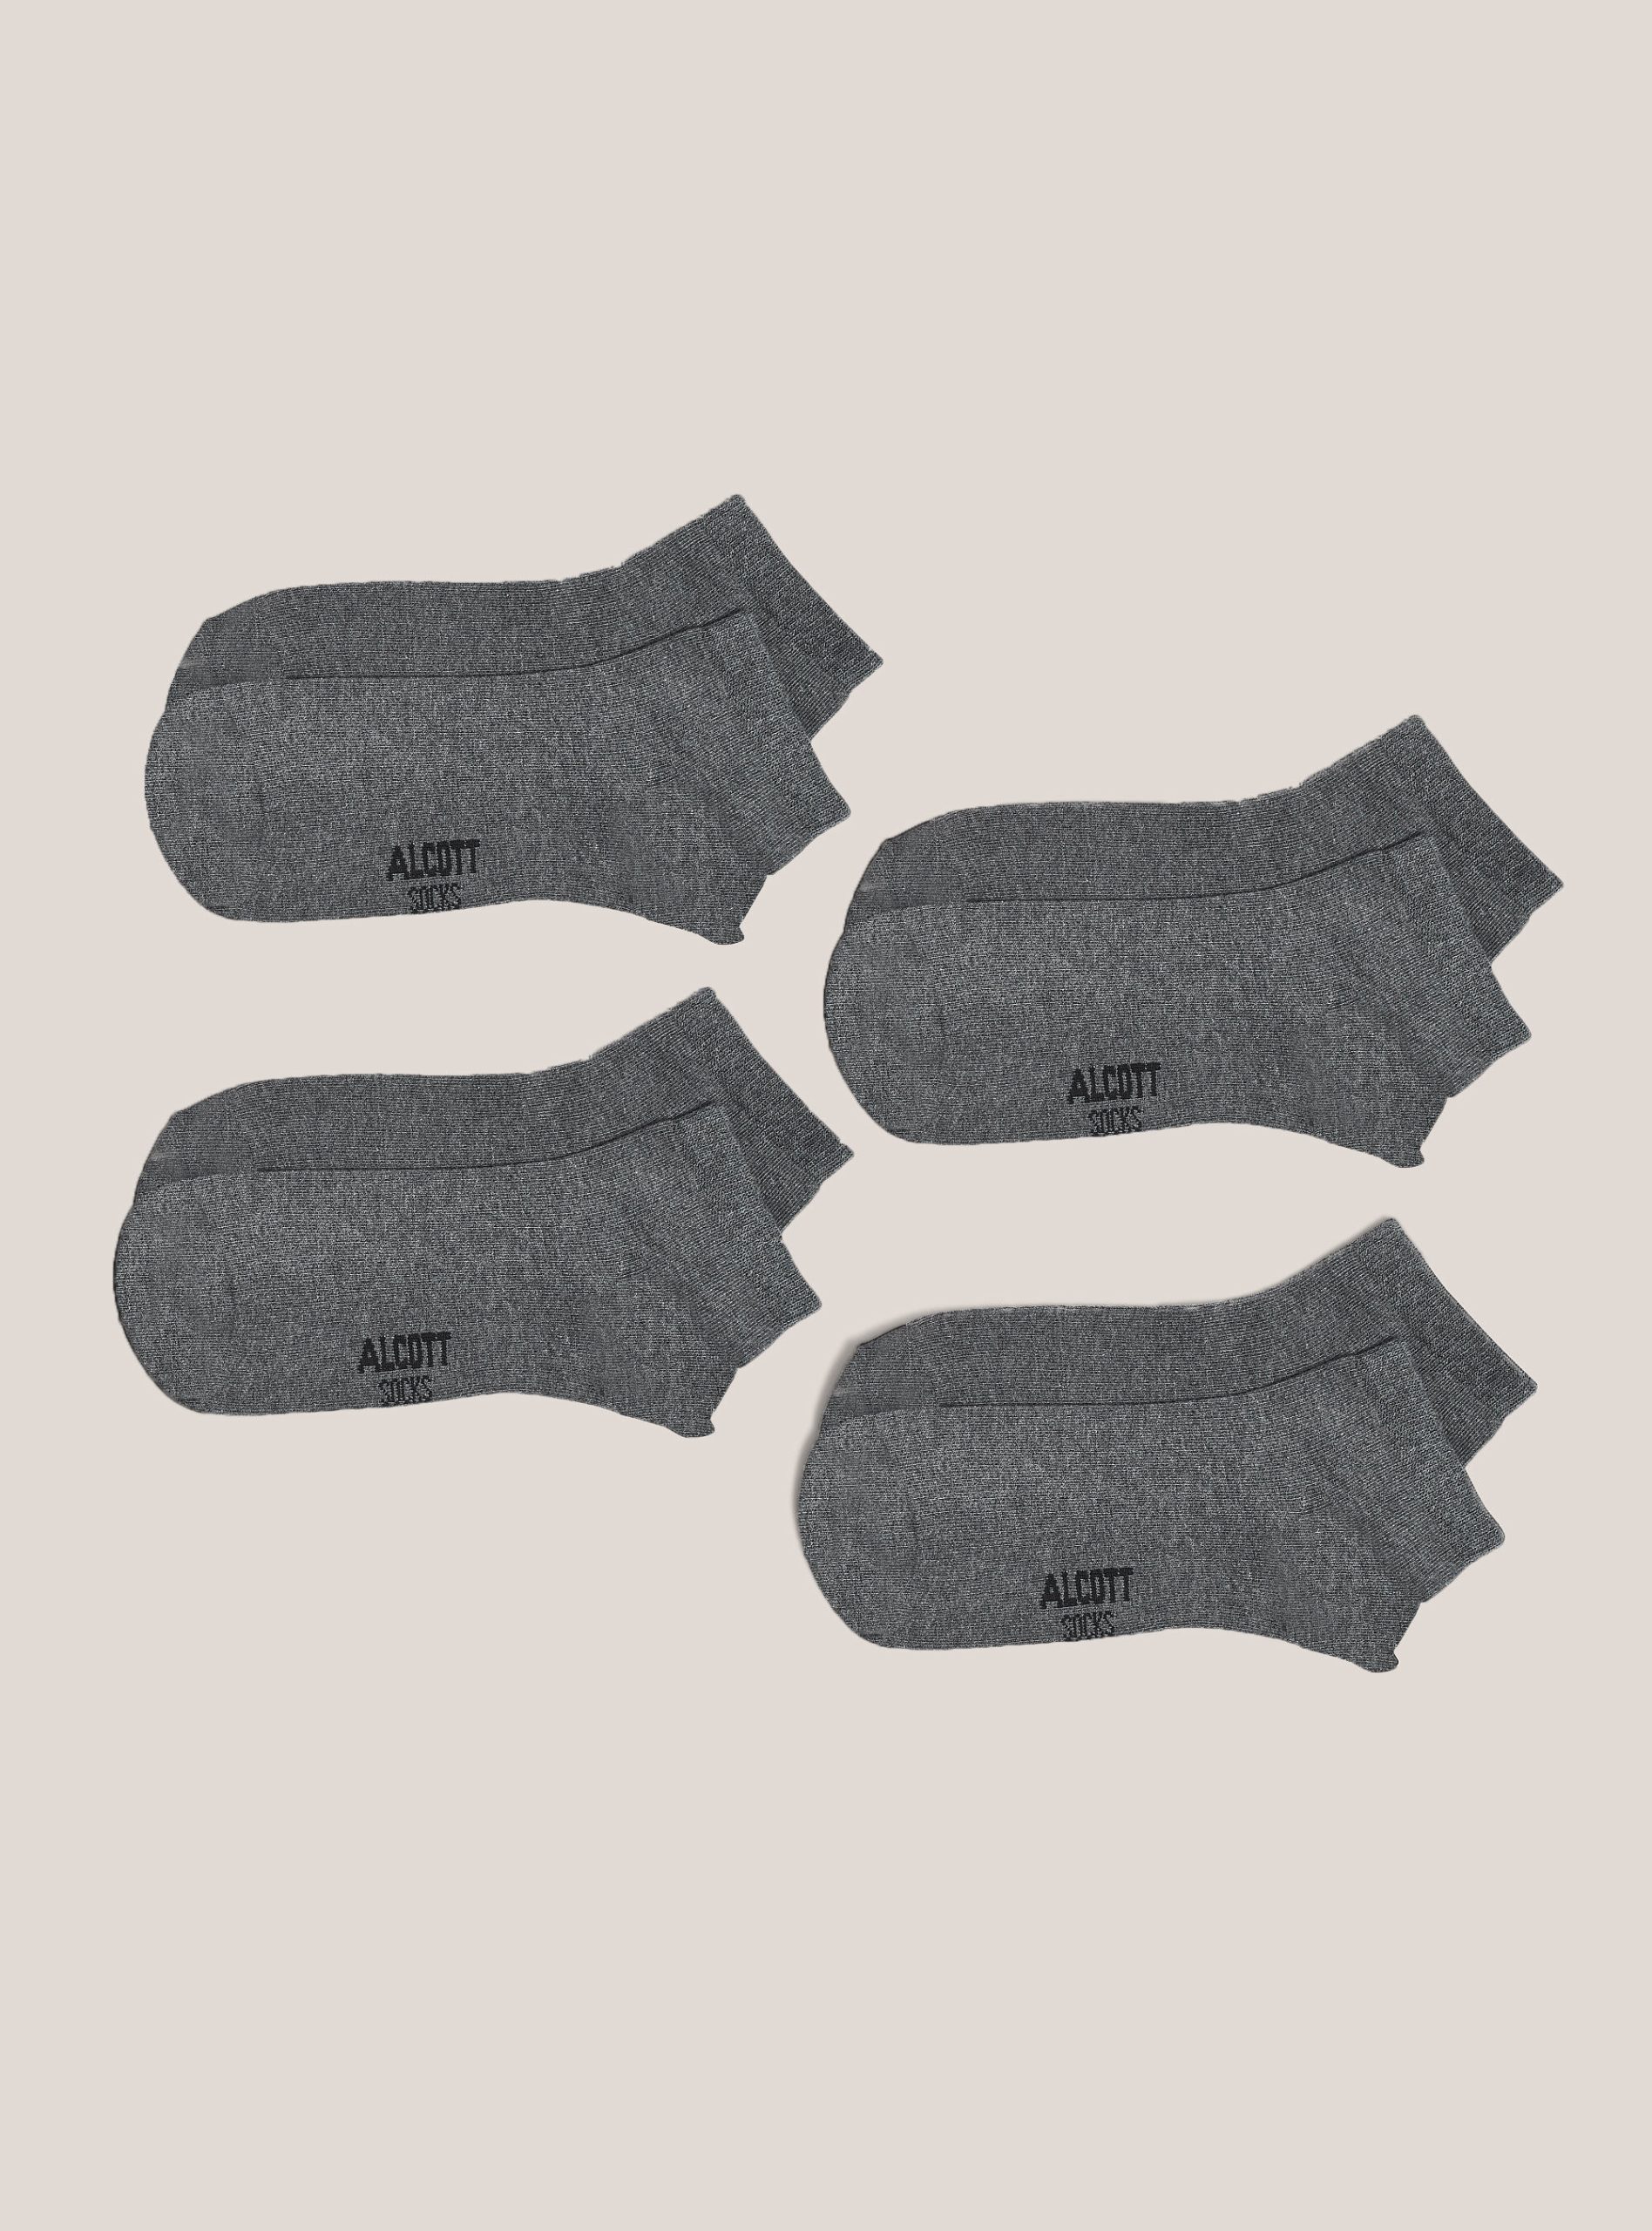 Alcott Socken Set Of 4 Pairs Of Plain Basic Socks Männer Mgy2 Grey Mel Medium Angebot – 1